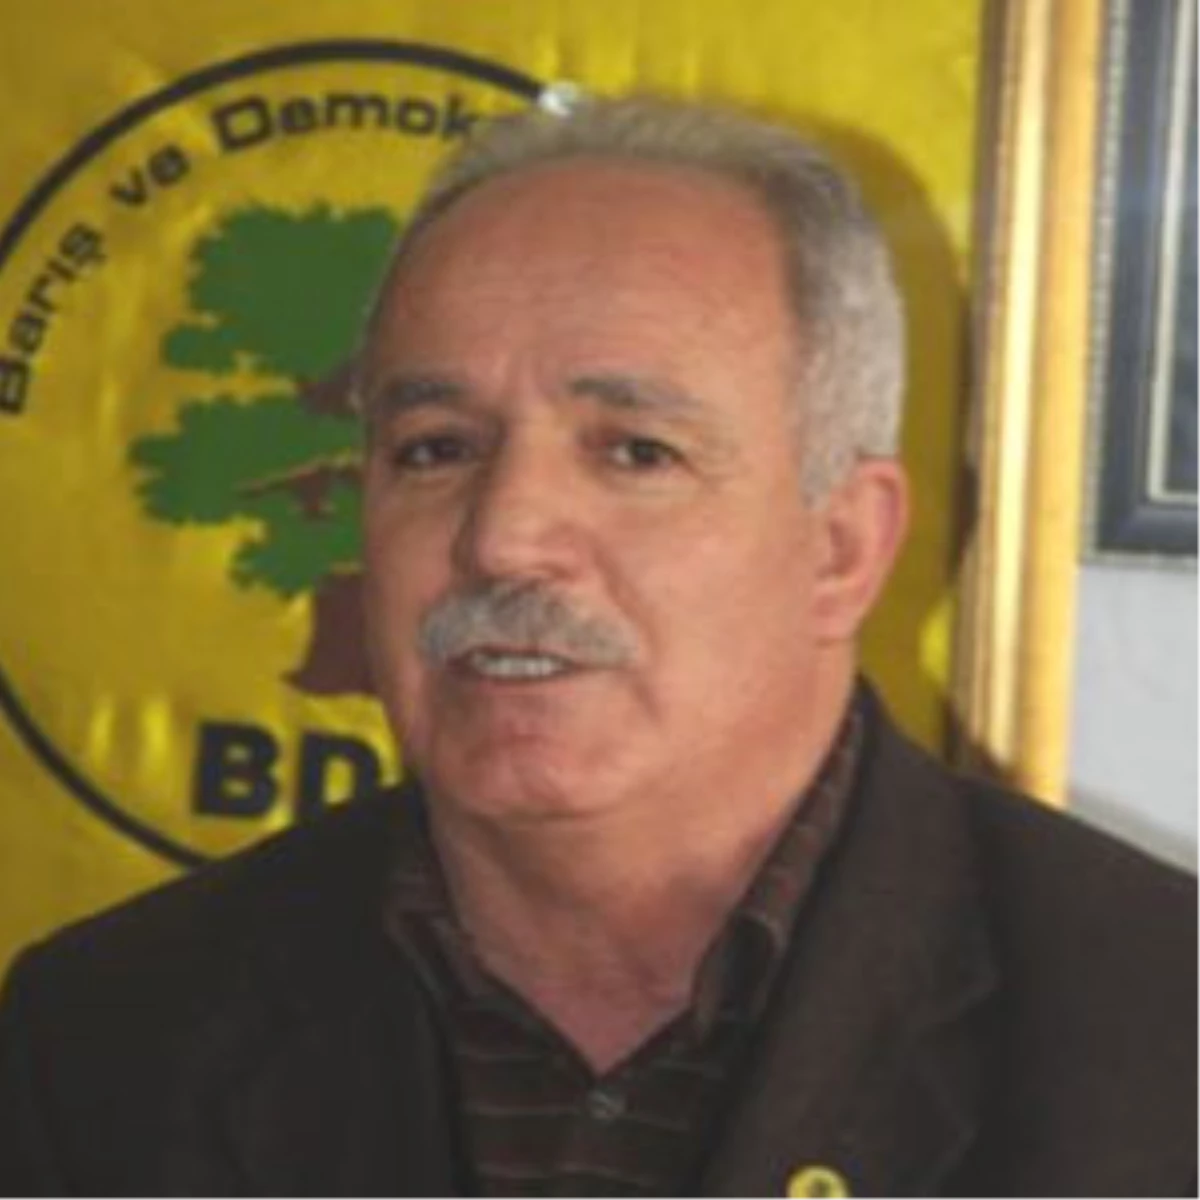 BDP Bingöl İl Başkanı Gözaltına Alındı